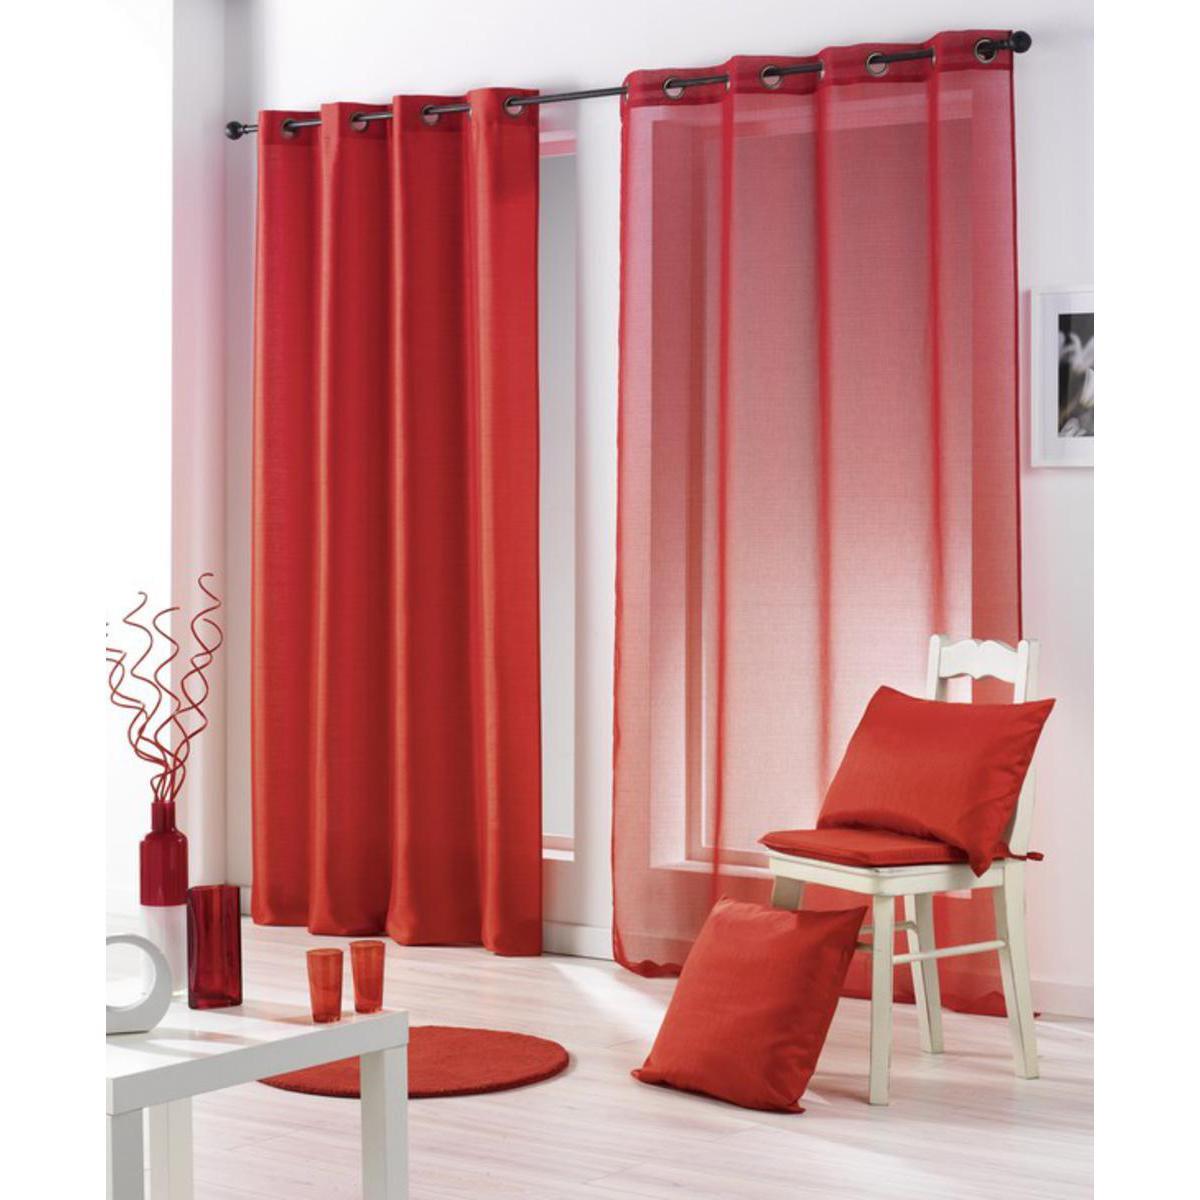 Galette de chaise Salsa en polyester - 40 x 40 x 3,5 cm - Rouge rubis